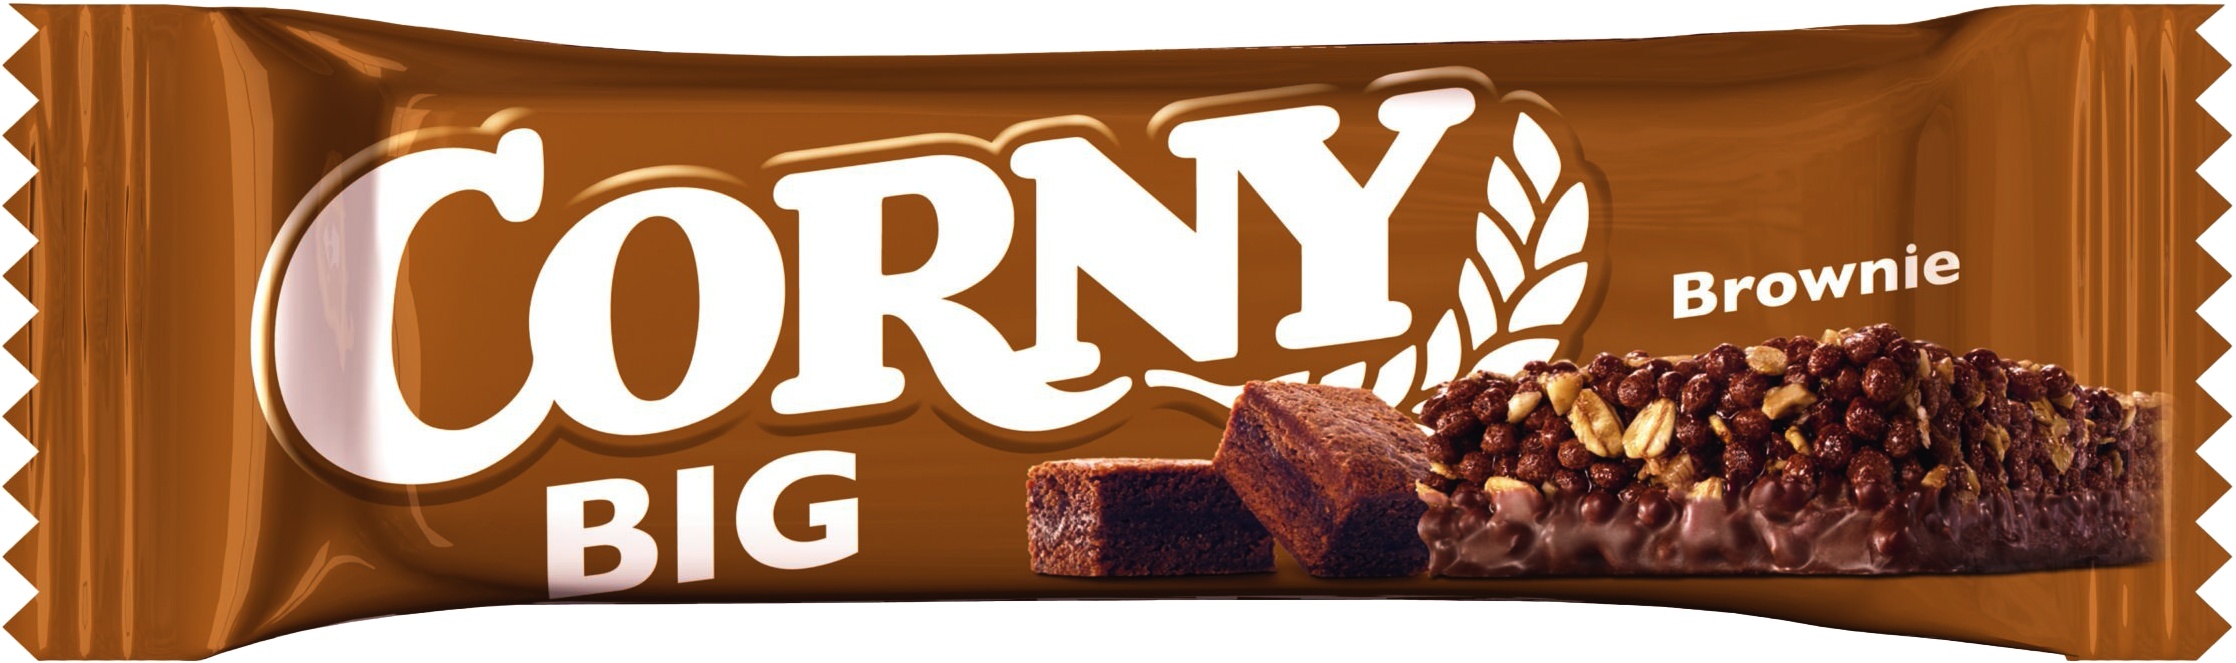 Slika za Mini bar Corny brownie extra big 50g